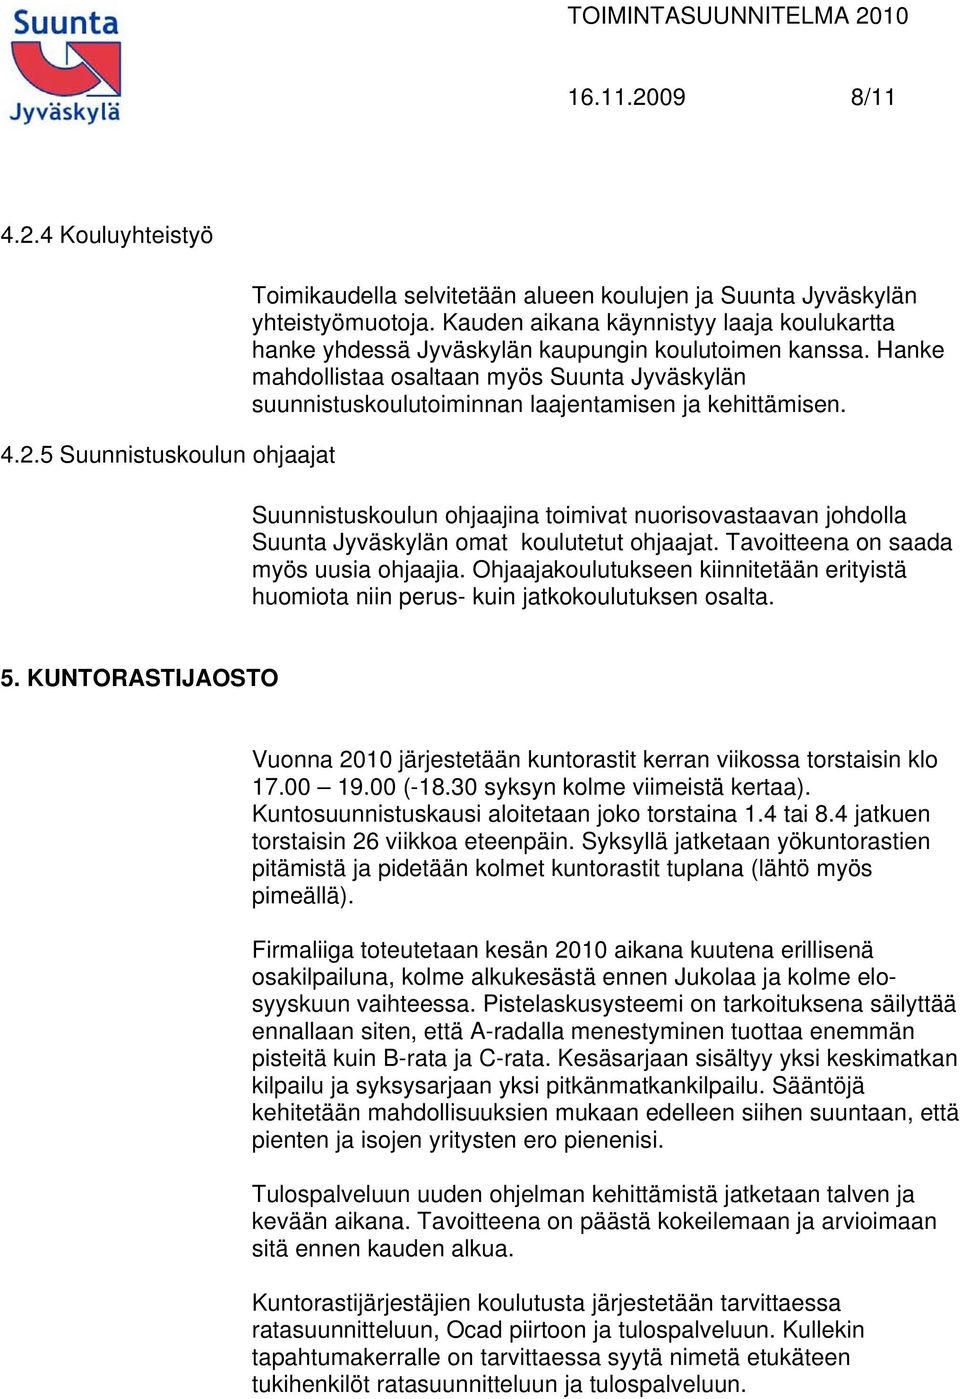 Hanke mahdollistaa osaltaan myös Suunta Jyväskylän suunnistuskoulutoiminnan laajentamisen ja kehittämisen.